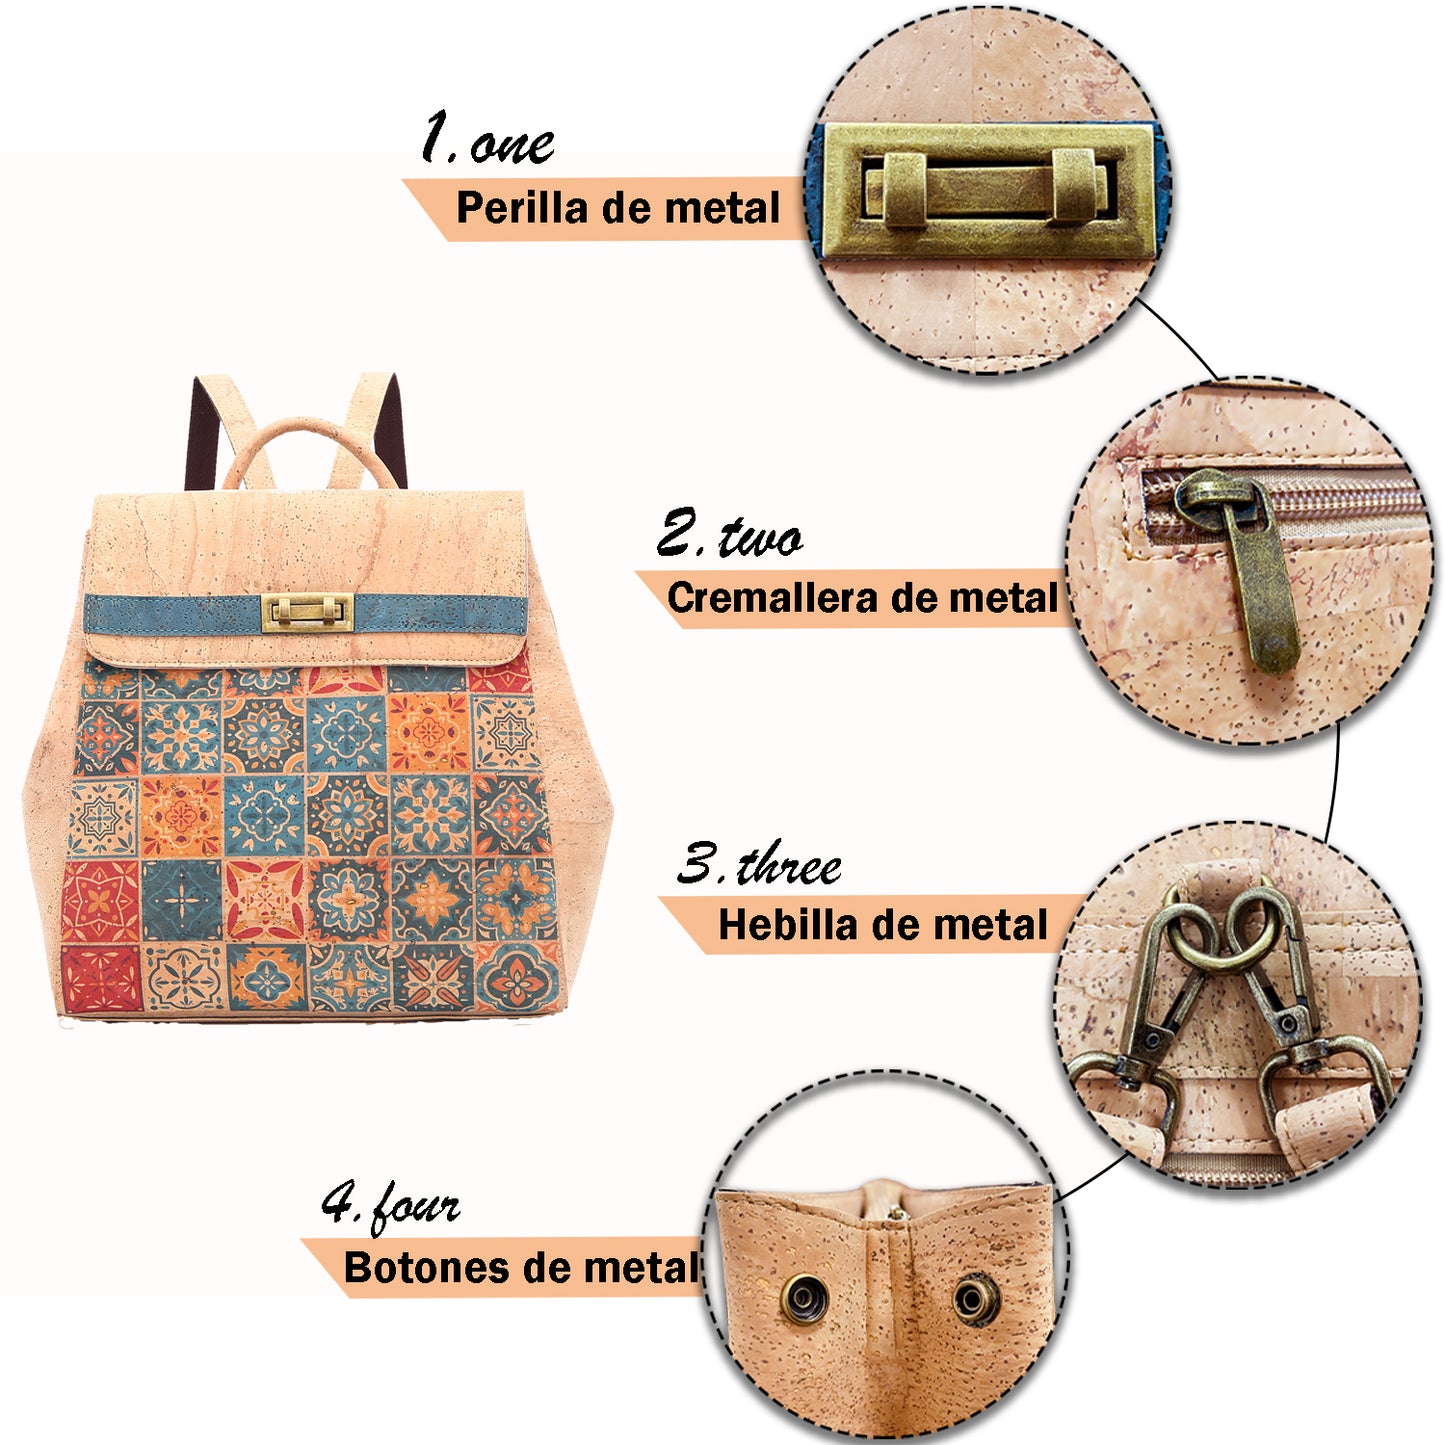 Cork backpack for women, cork bag, vegan bag, natural materials, eco bag, leather bag, scholl bag, cork bag, natural color cork 